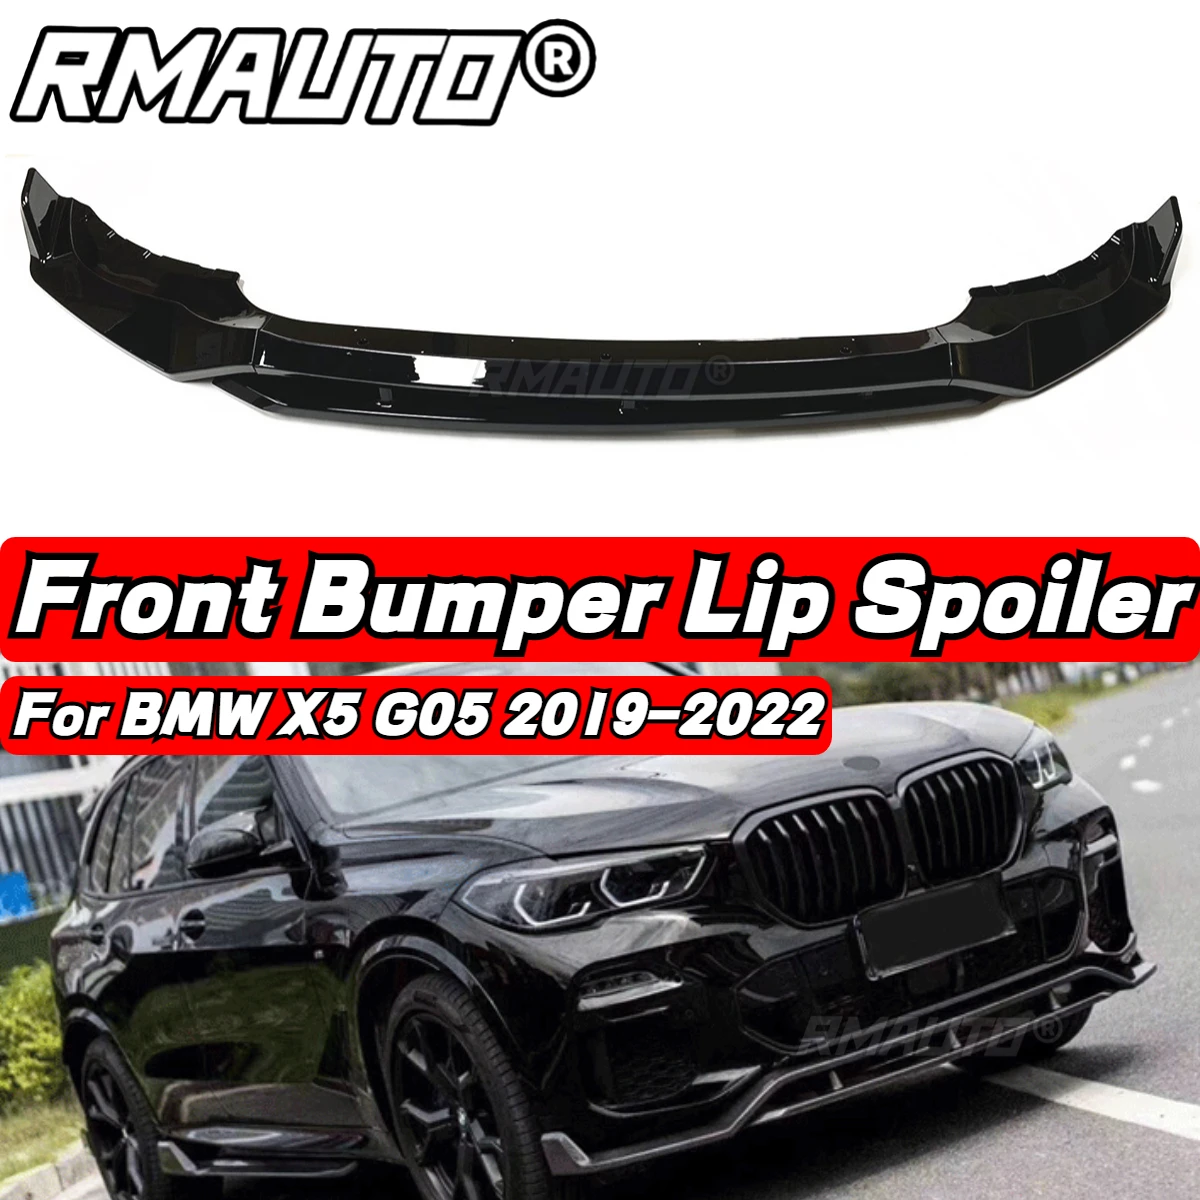 

Для BMW X5 G05 2019-2022 автомобильный передний бампер спойлер разветвитель губ Защита бампера комплект защиты кузова автомобильные аксессуары внешние части